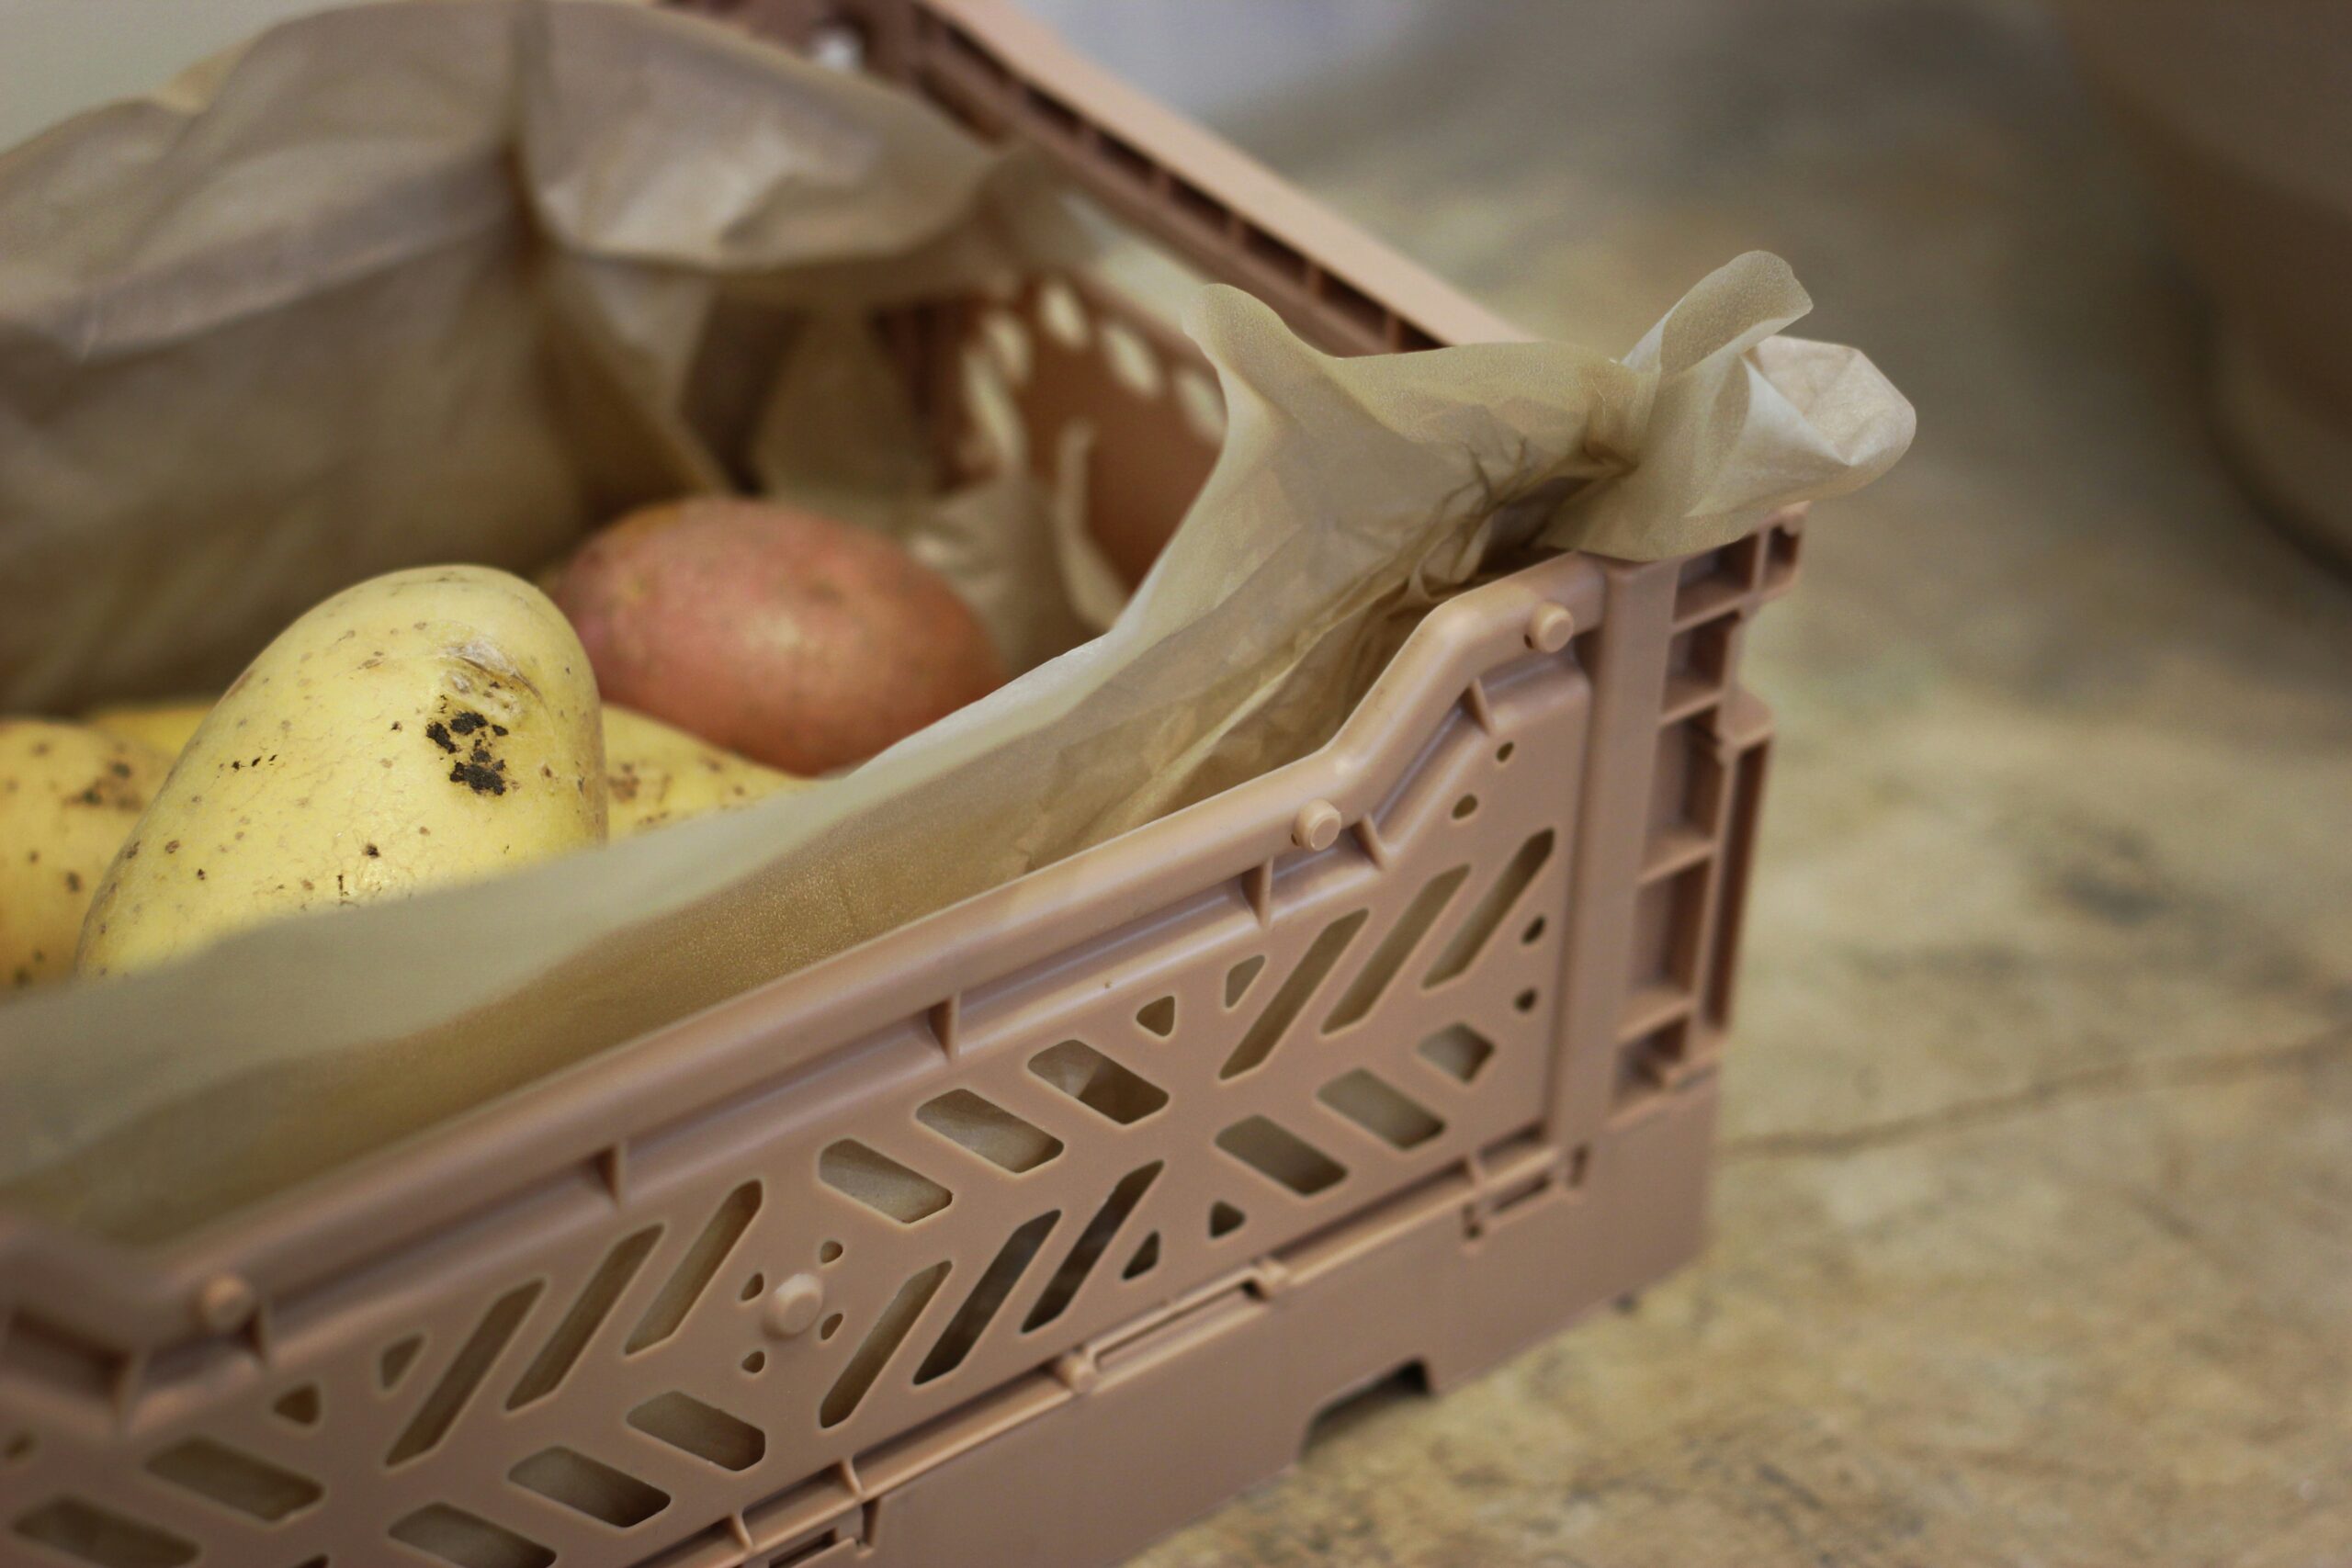 découvrez la saveur authentique de la pomme de terre reconstituée, idéale pour des plats savoureux et faciles à préparer.